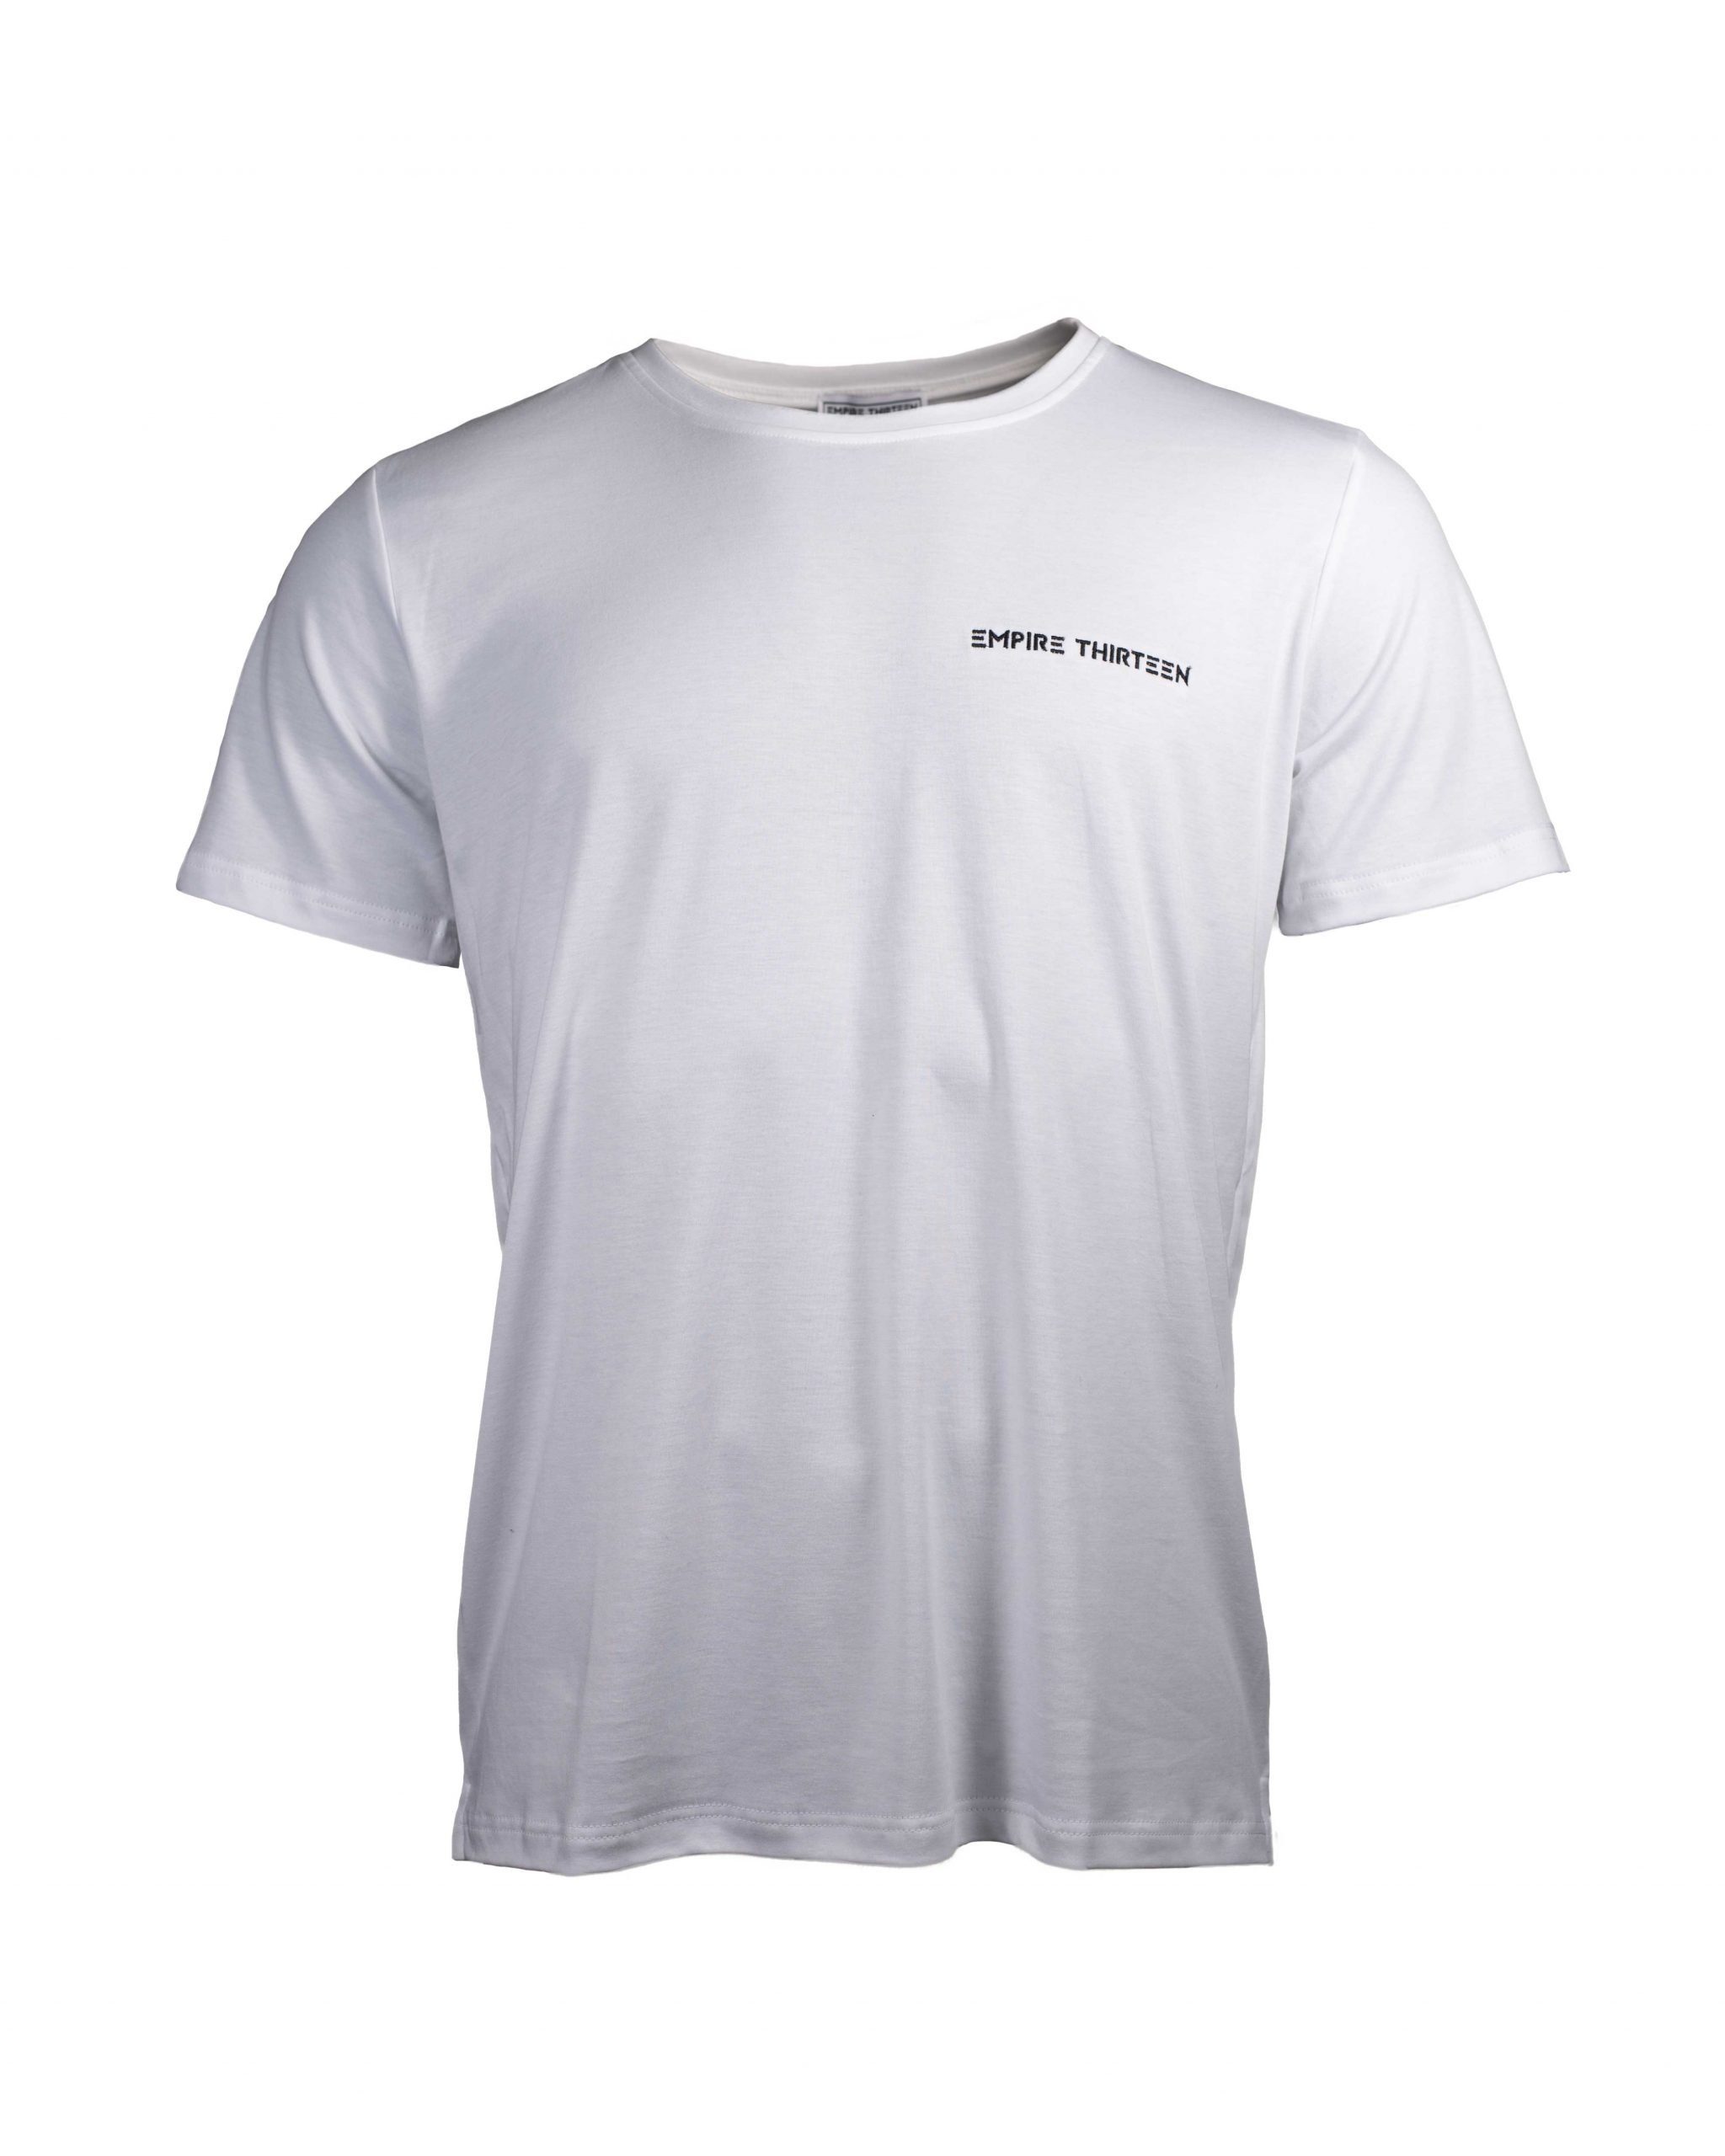 BASIC MEN Stickerei T-Shirt "EMPIRE-THIRTEEN" Weiß EMPIRE-THIRTEEN SHIRT